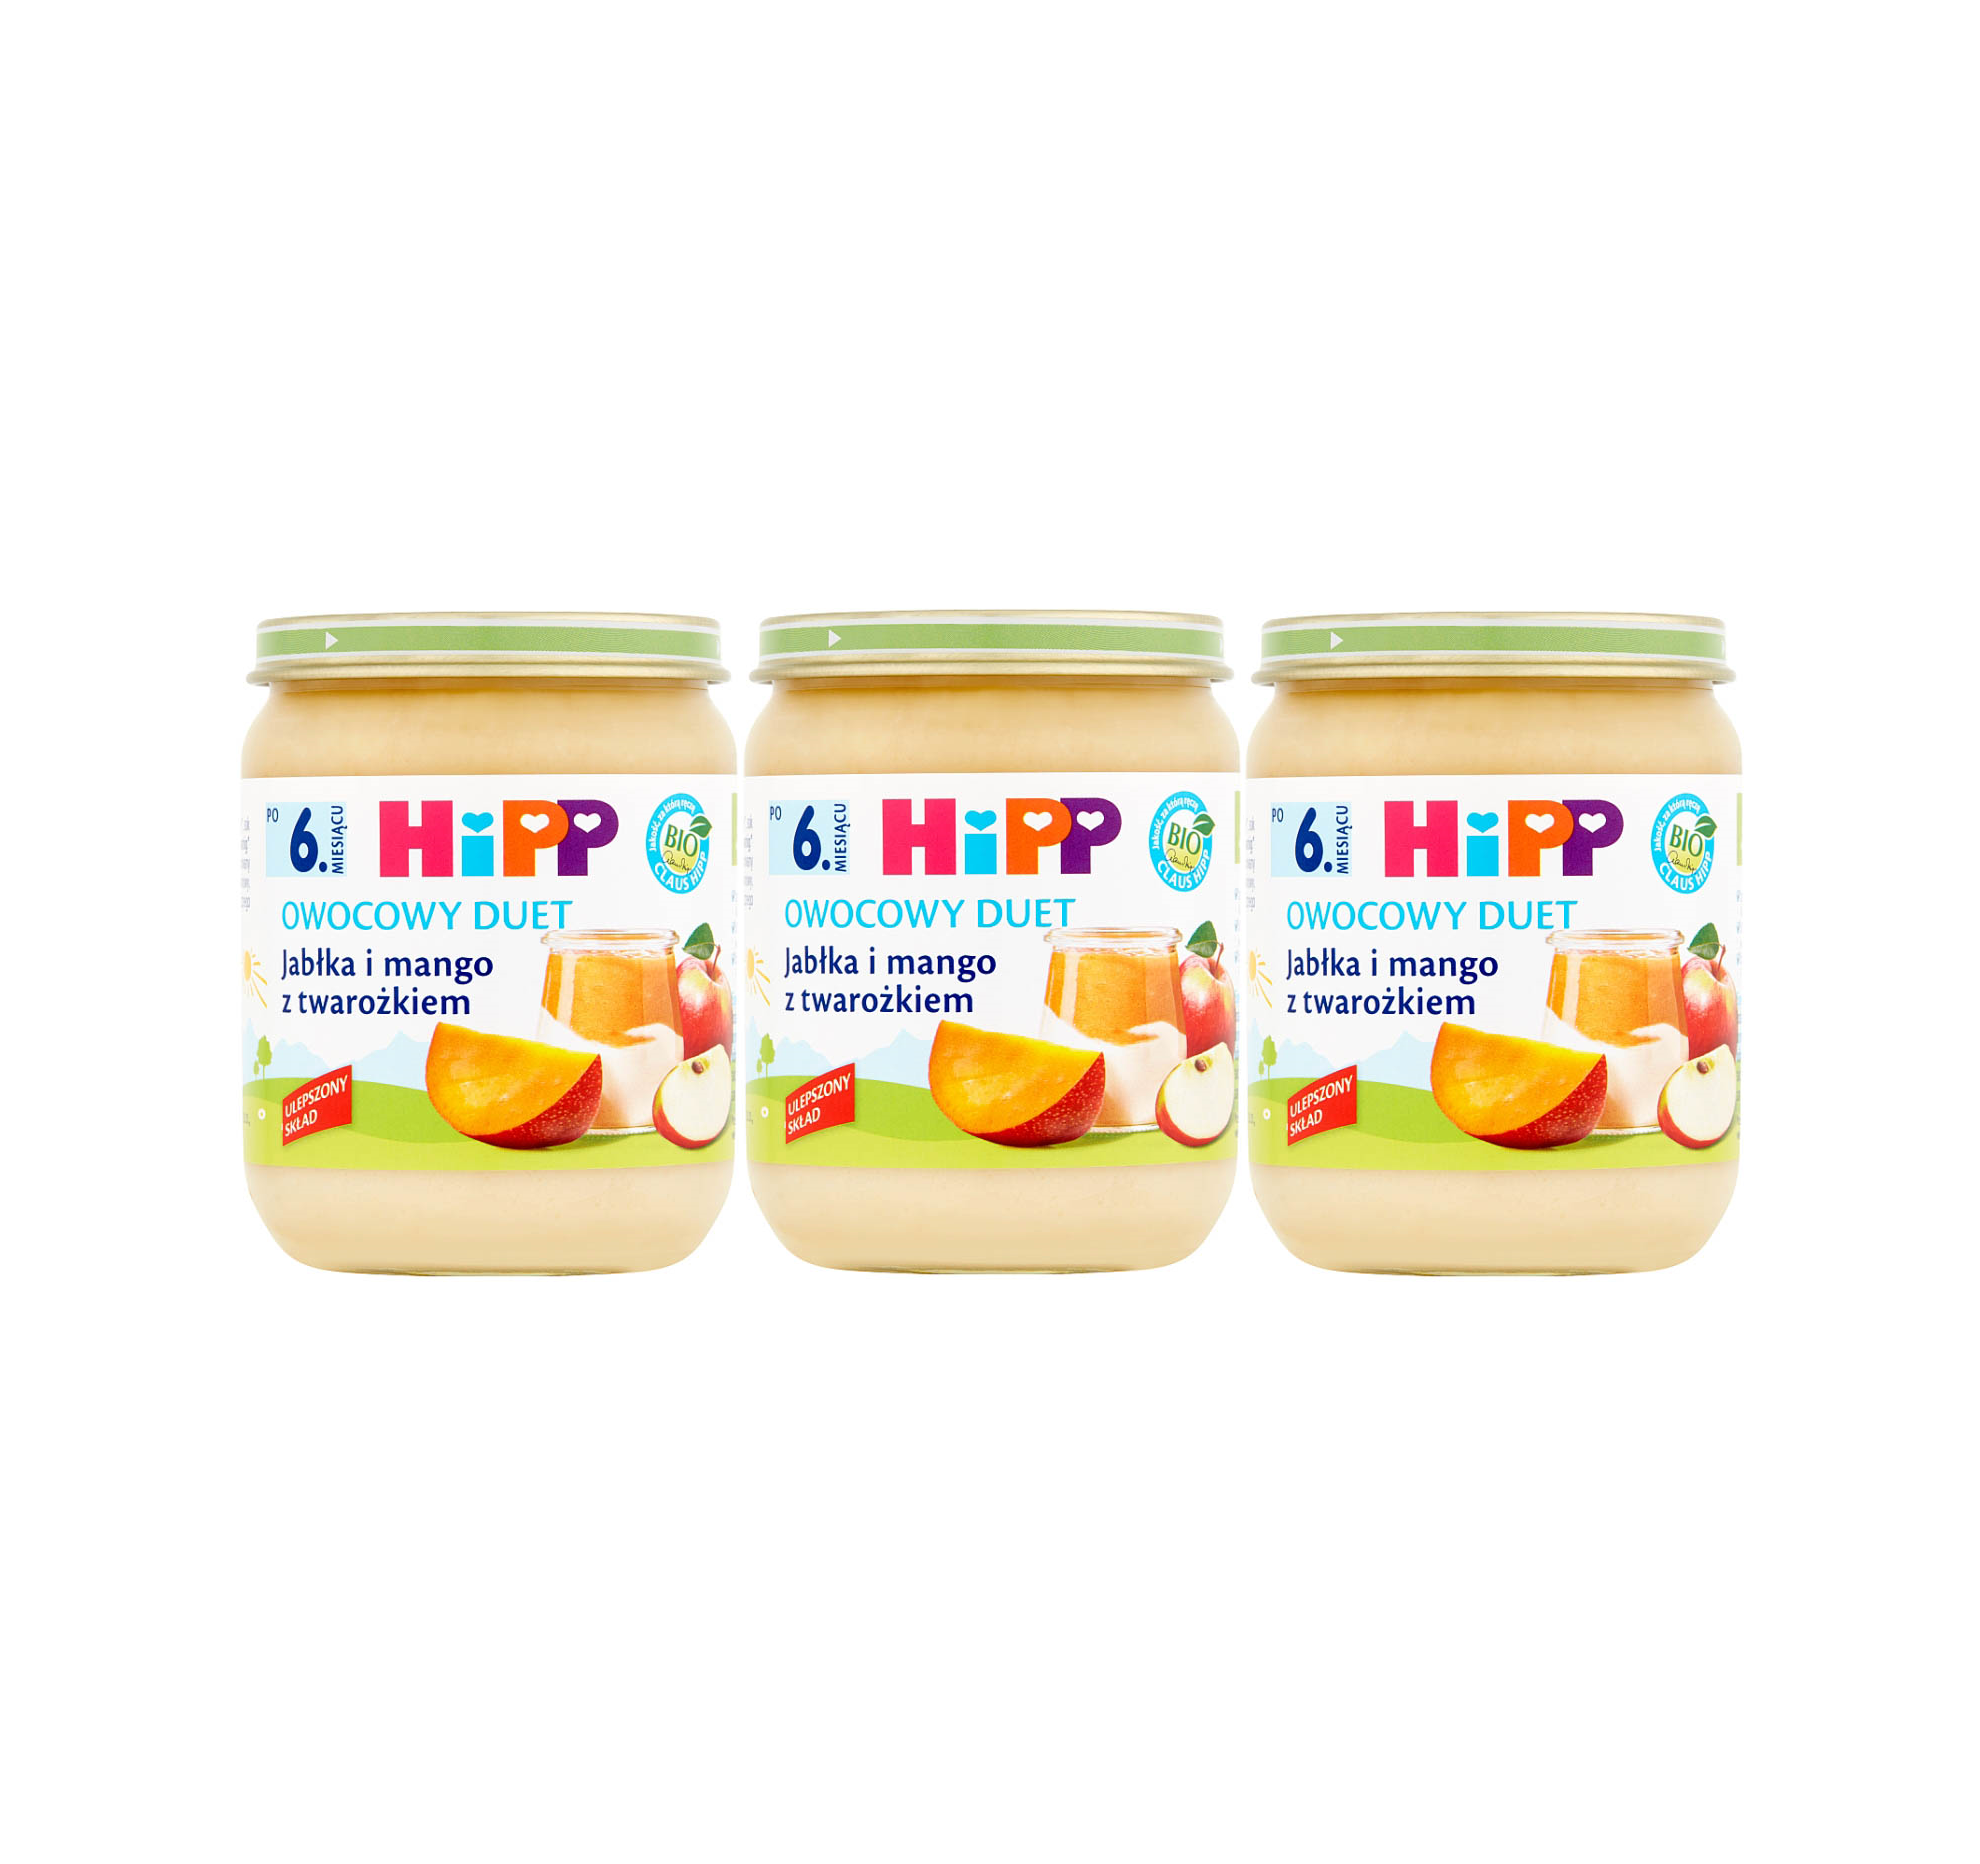 3 pak hipp 160 owocowy duet jablka i mango z twarozkiem